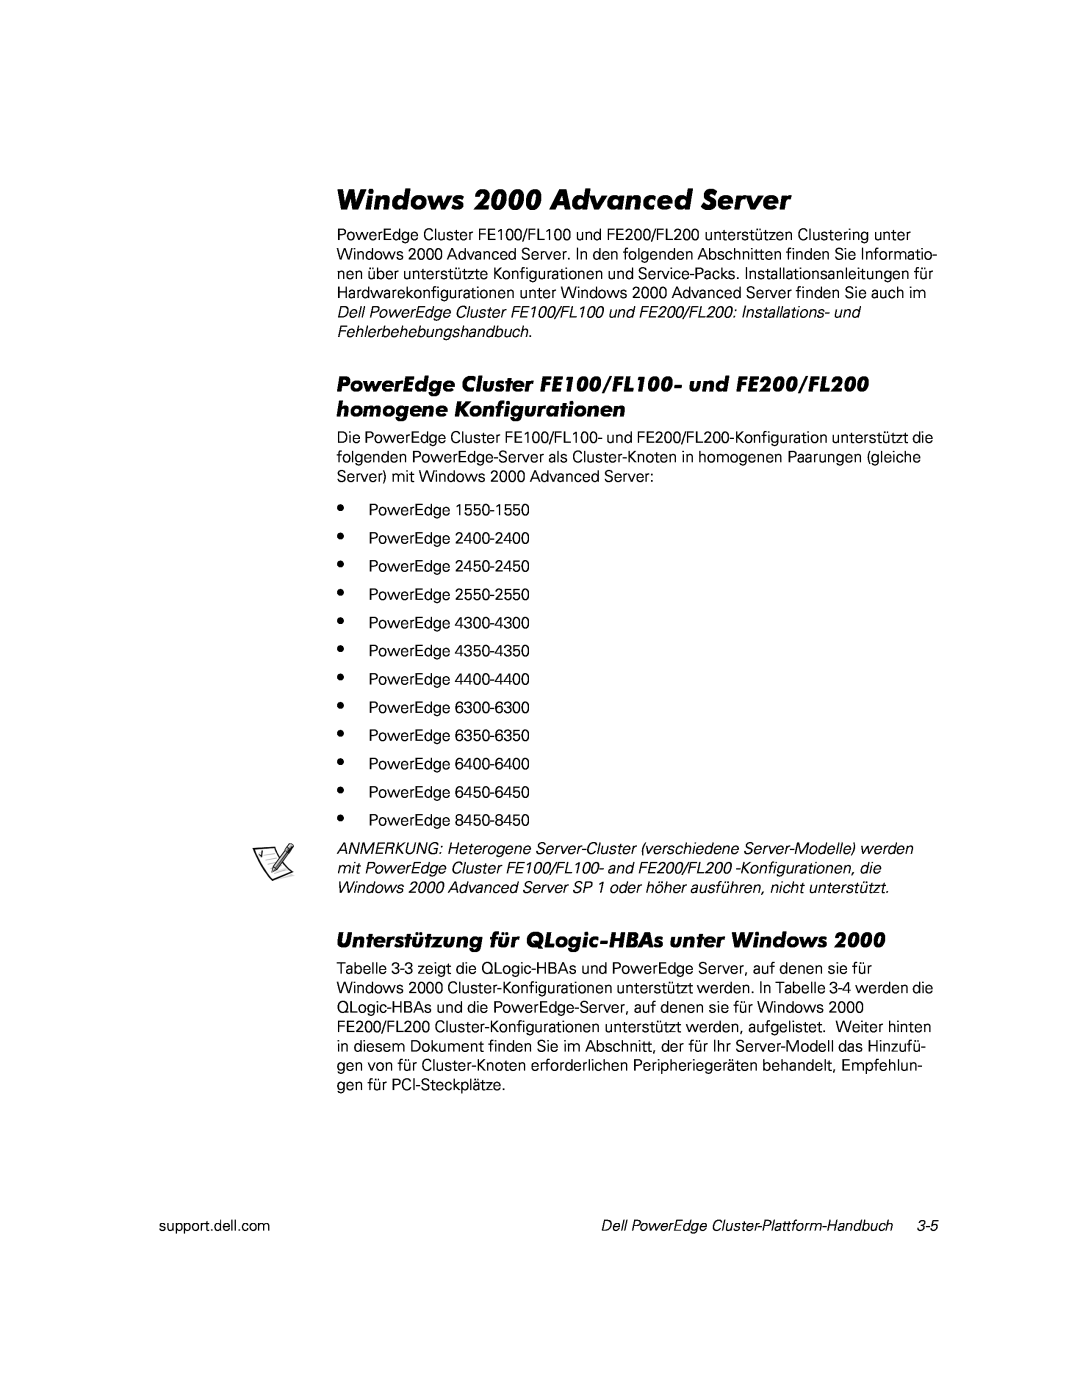 Dell FL200, FE100, FL100 Unterstützung für QLogic-HBAsunter Windows, Windows 2000 Advanced Server, • • • • • • • • • • • • 